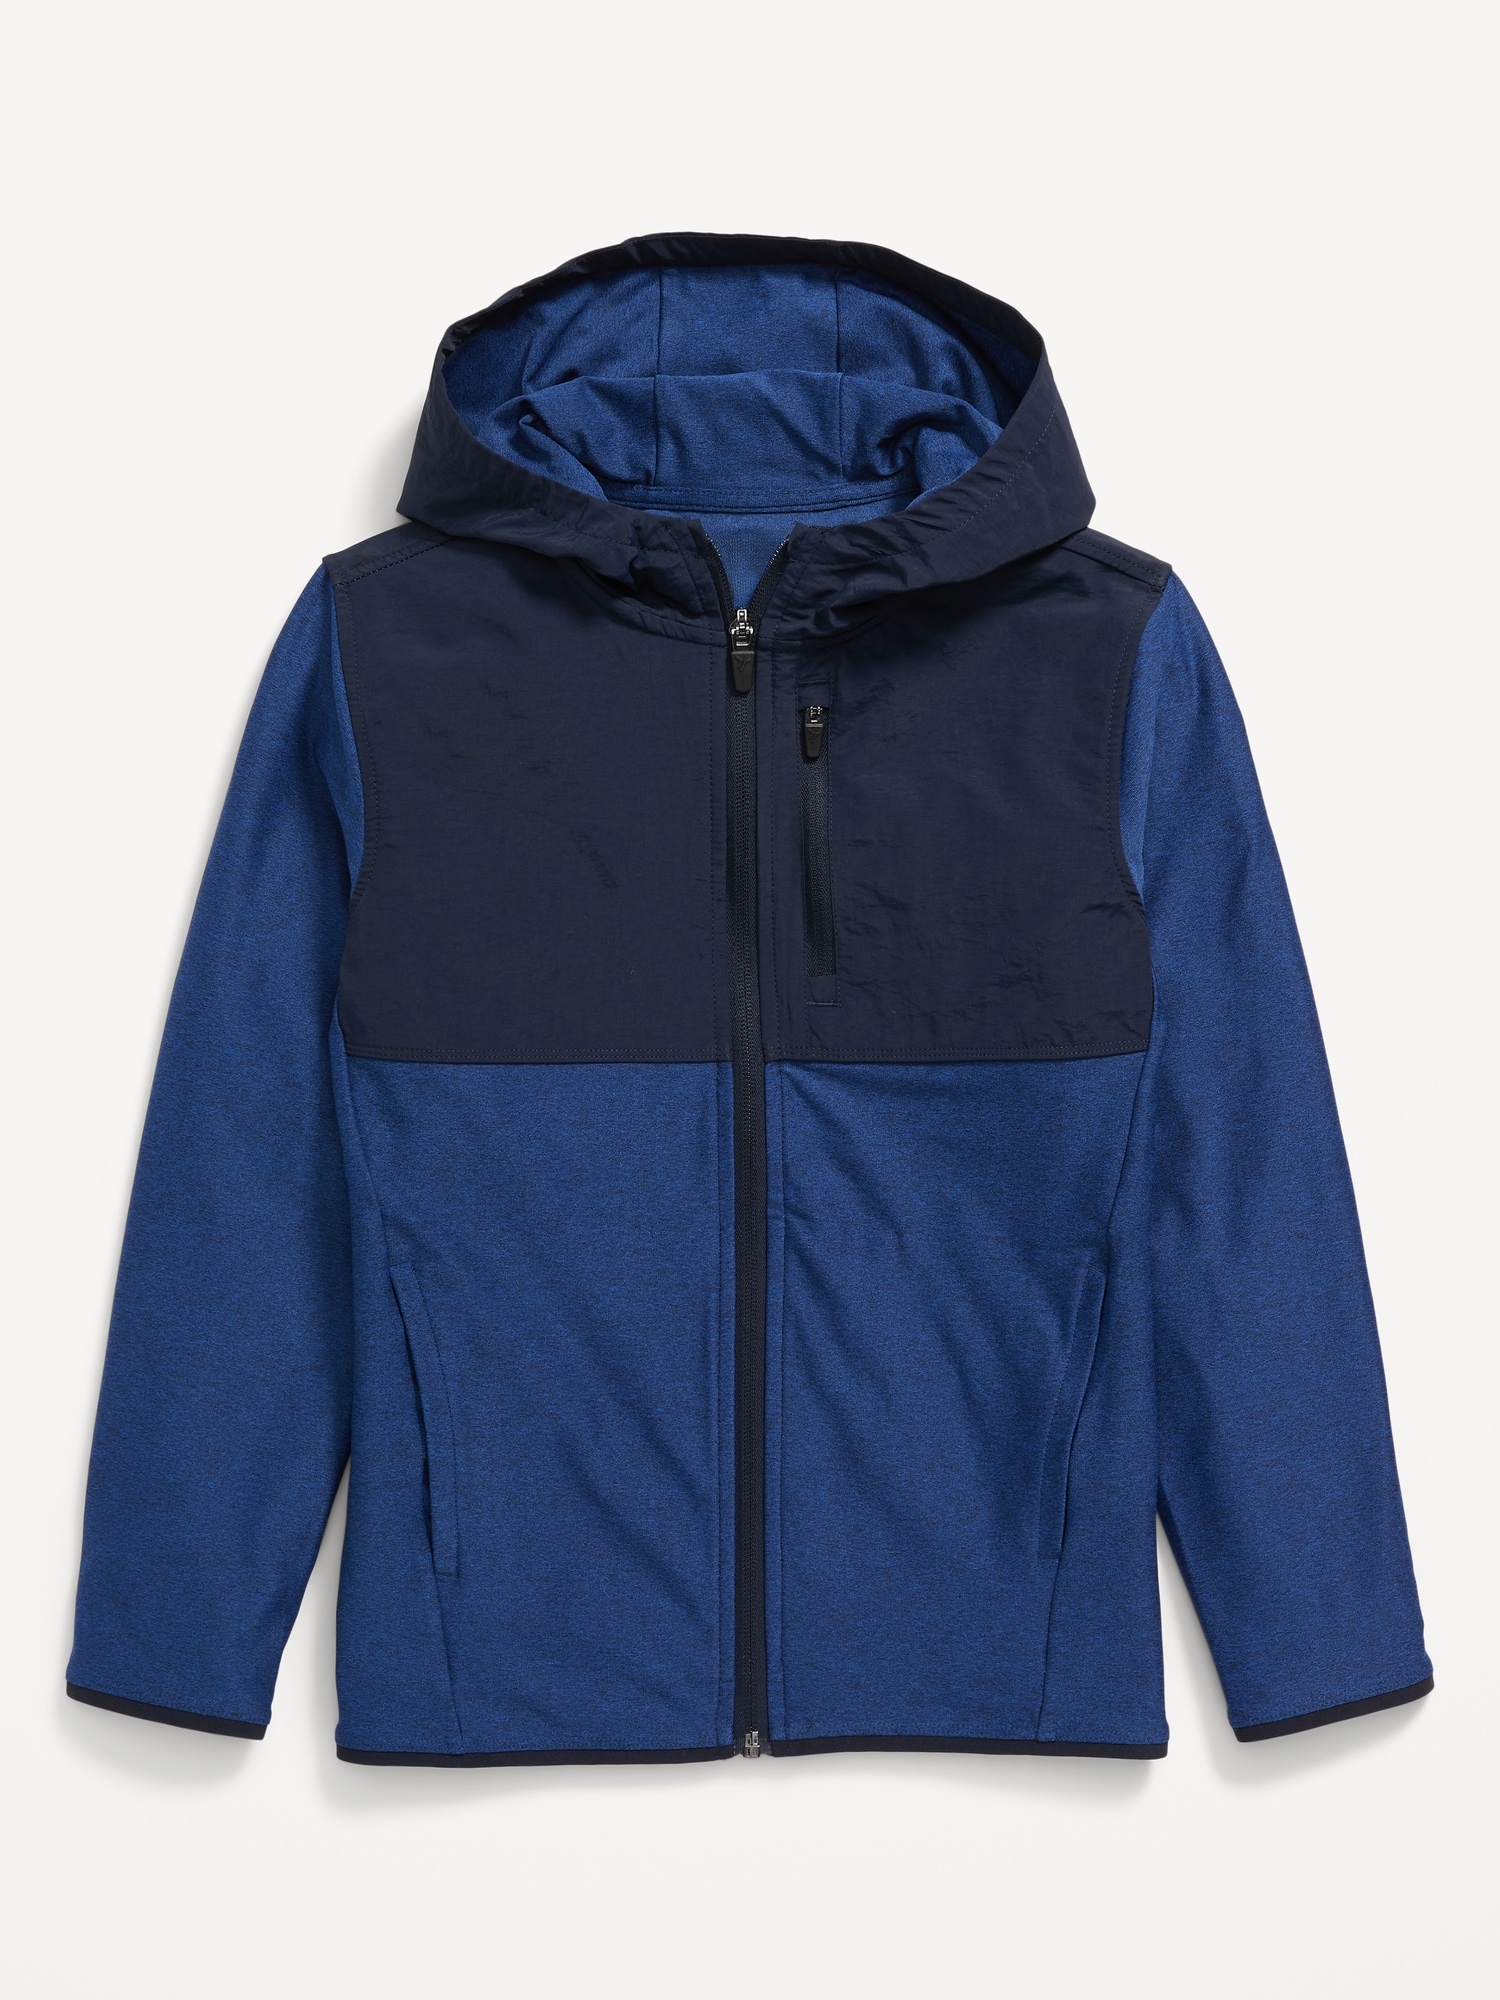 KnitTech Go-Dry Cool Hybrid Hooded Jacket for Boys